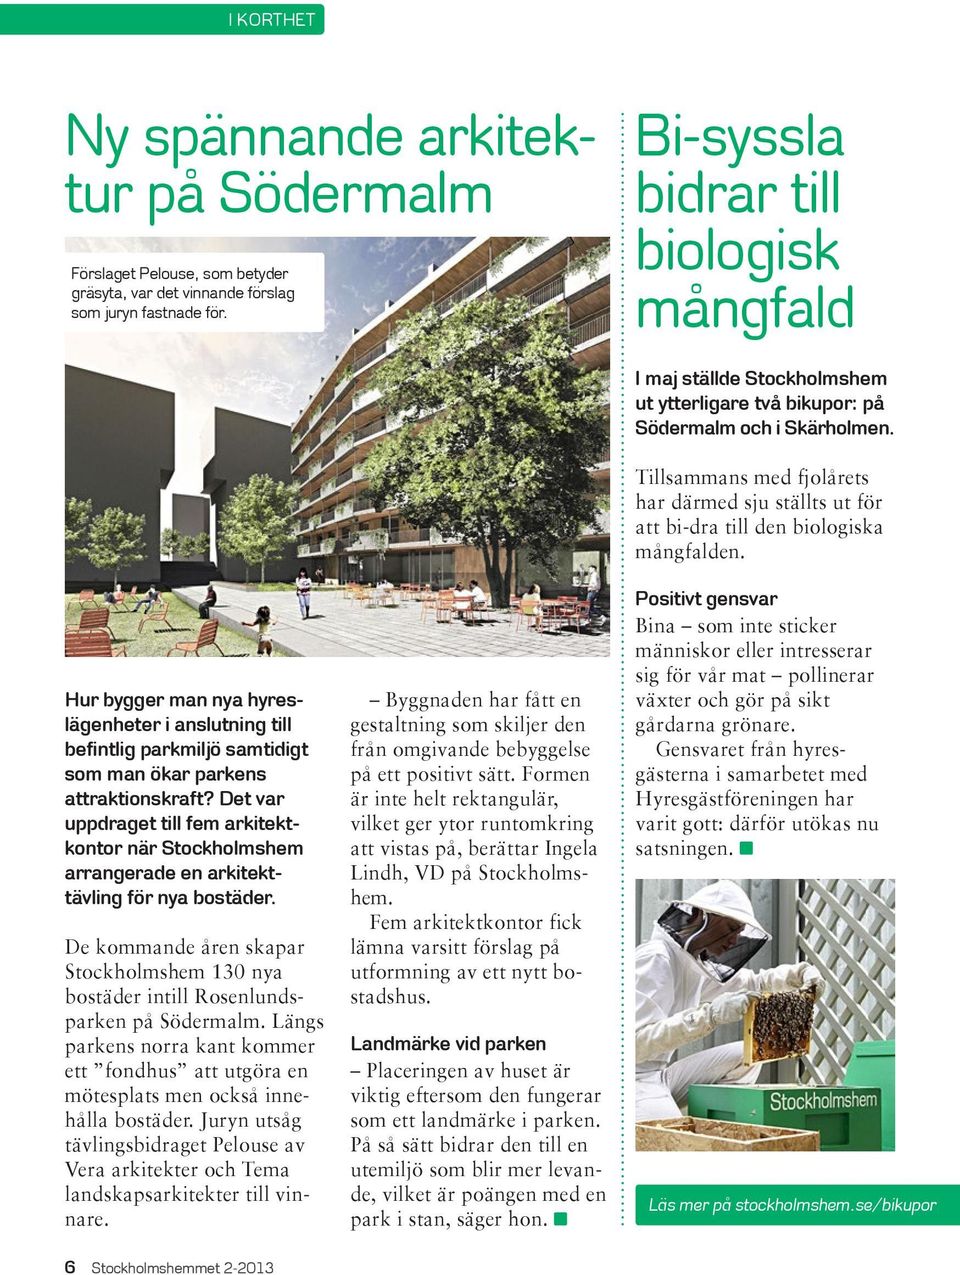 Det var uppdraget till fem arkitektkontor när Stockholmshem arrangerade en arkitekttävling för nya bostäder.